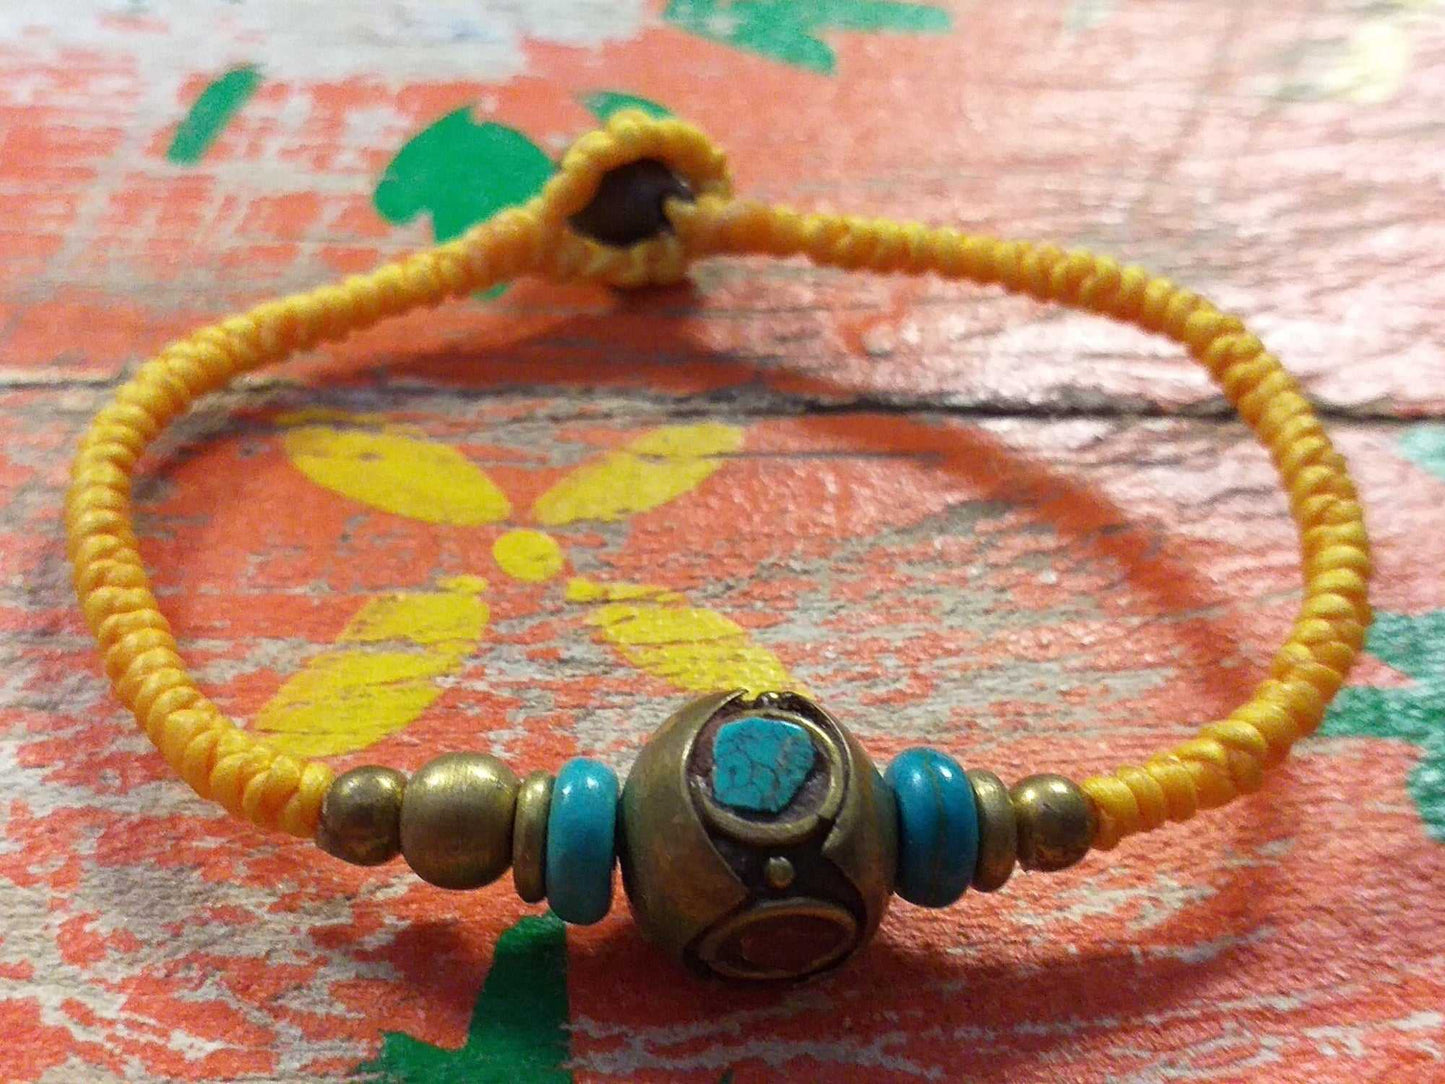 Tibet Friendship Bracelet